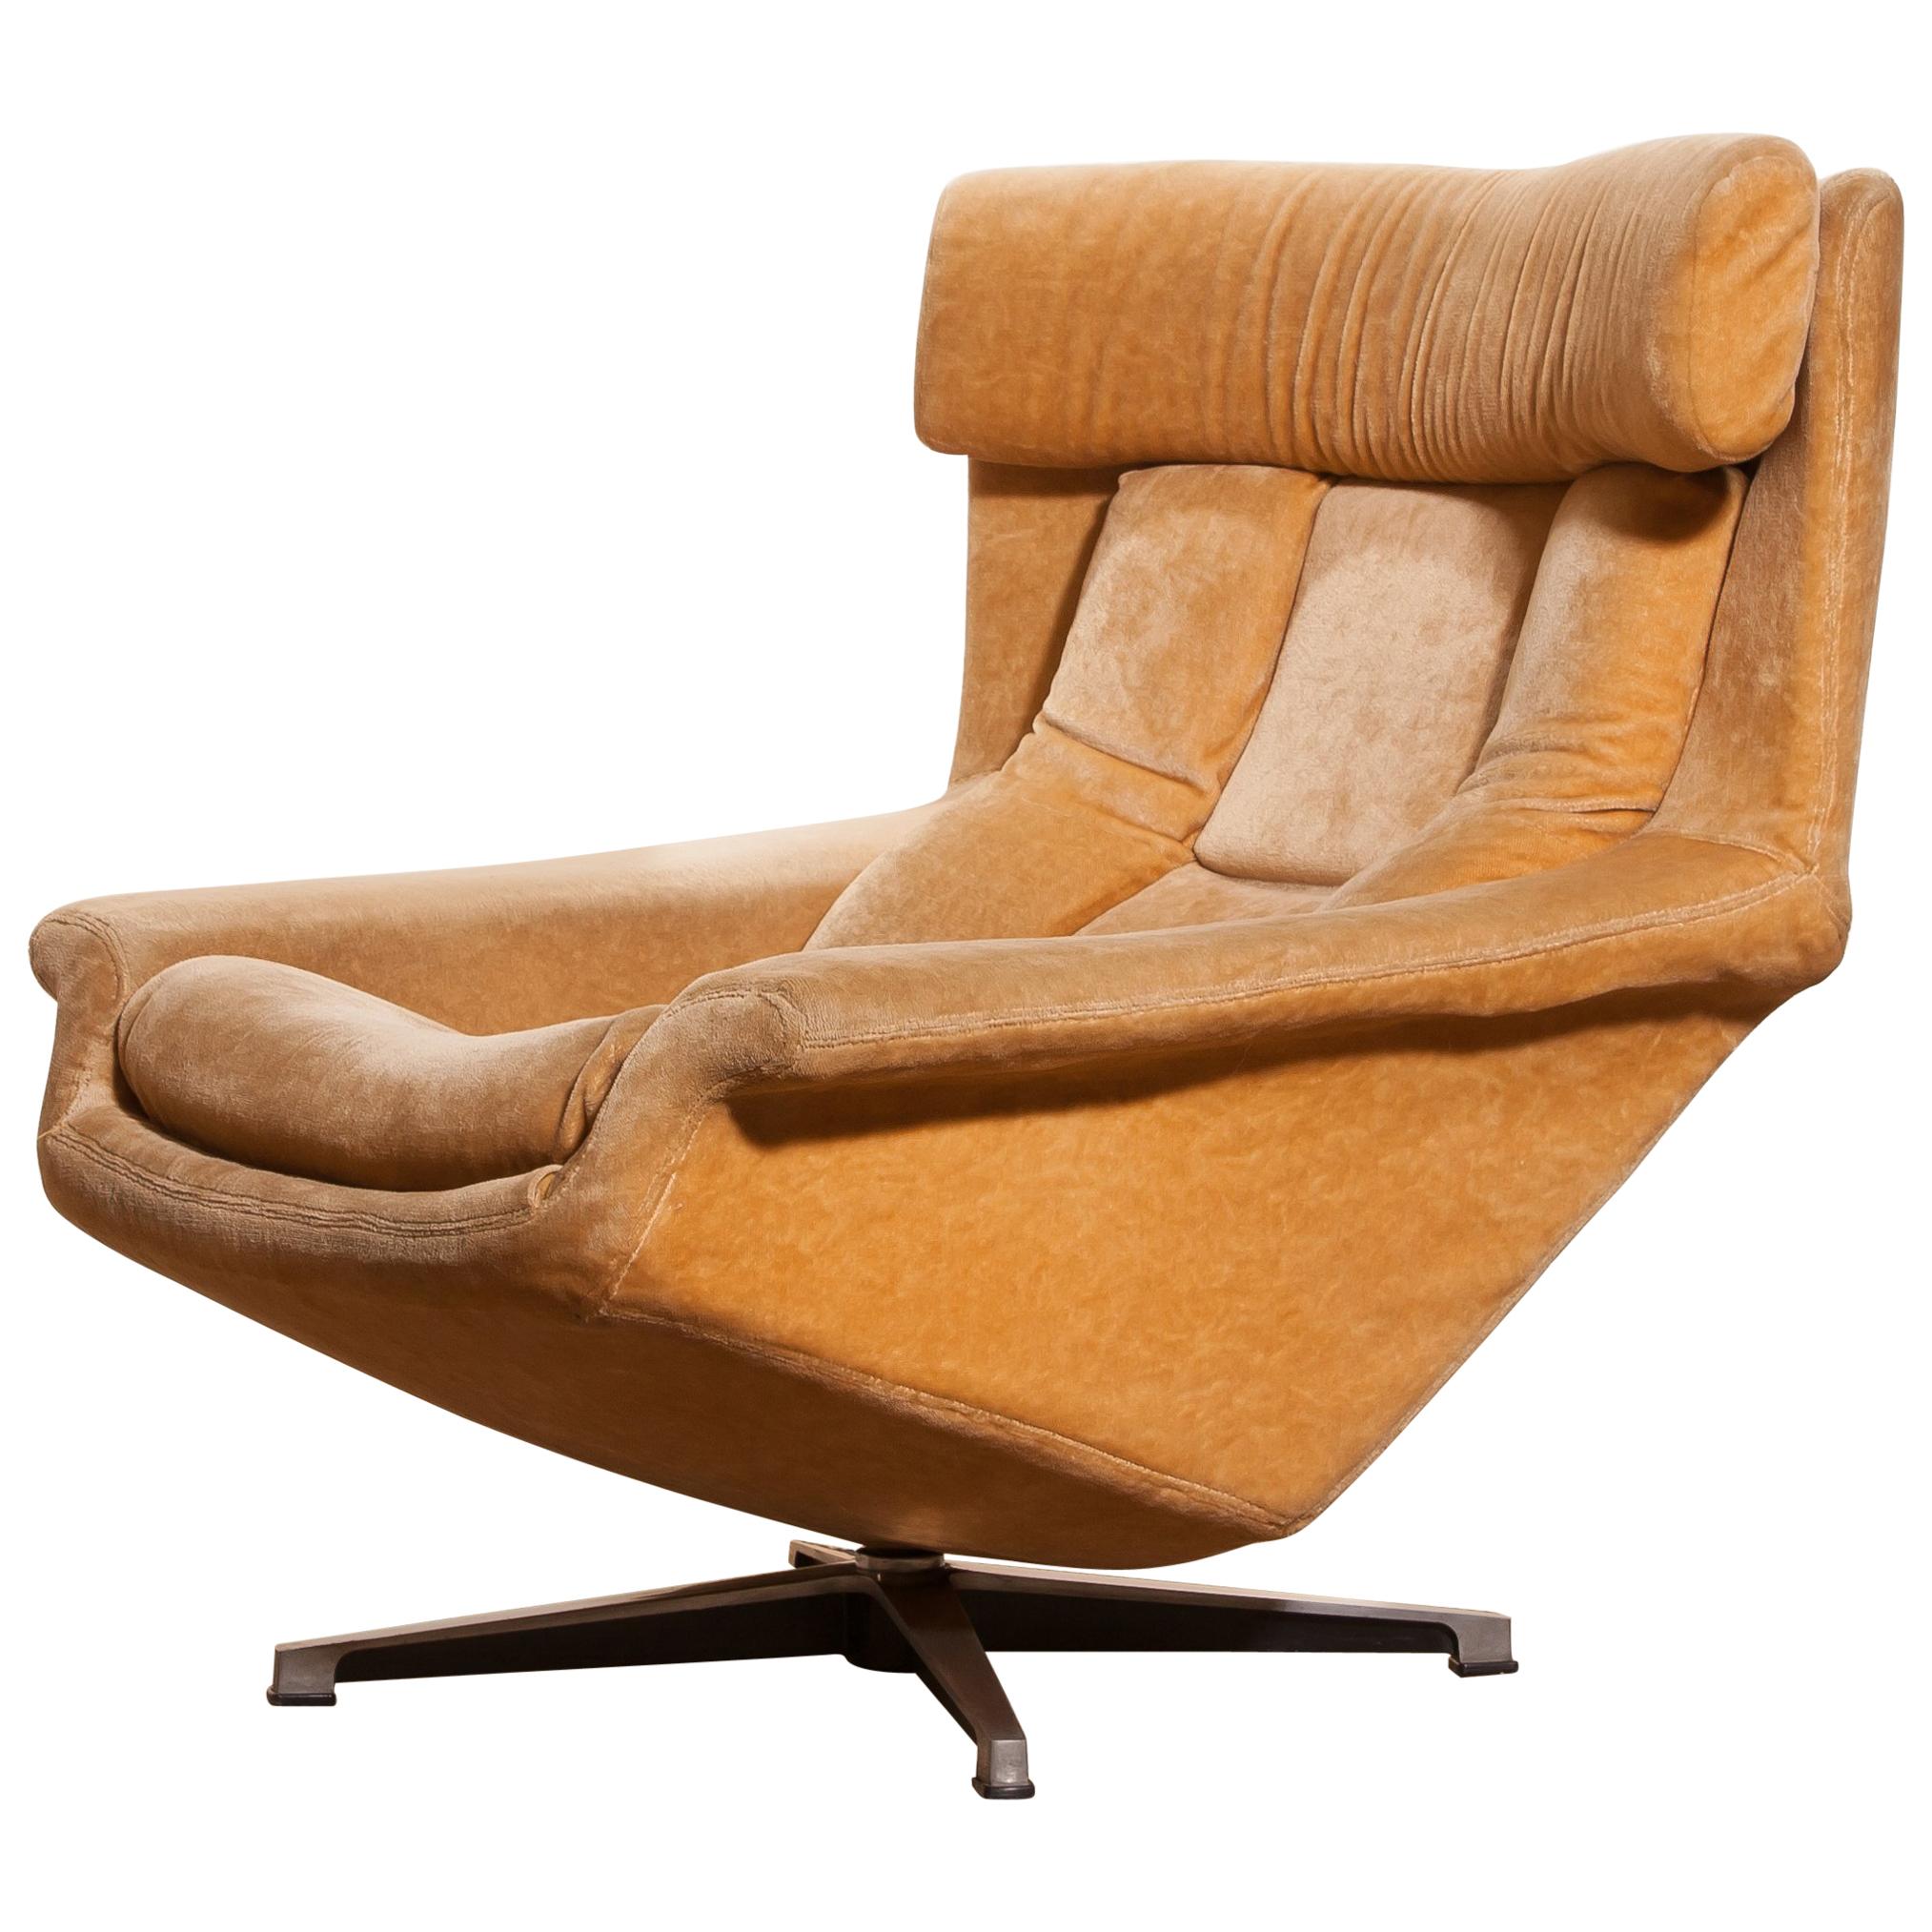 1960s, Golden/Beige Velvet Swivel Lounge Chair 'Bamse' by Bra Bohag AB Sweden